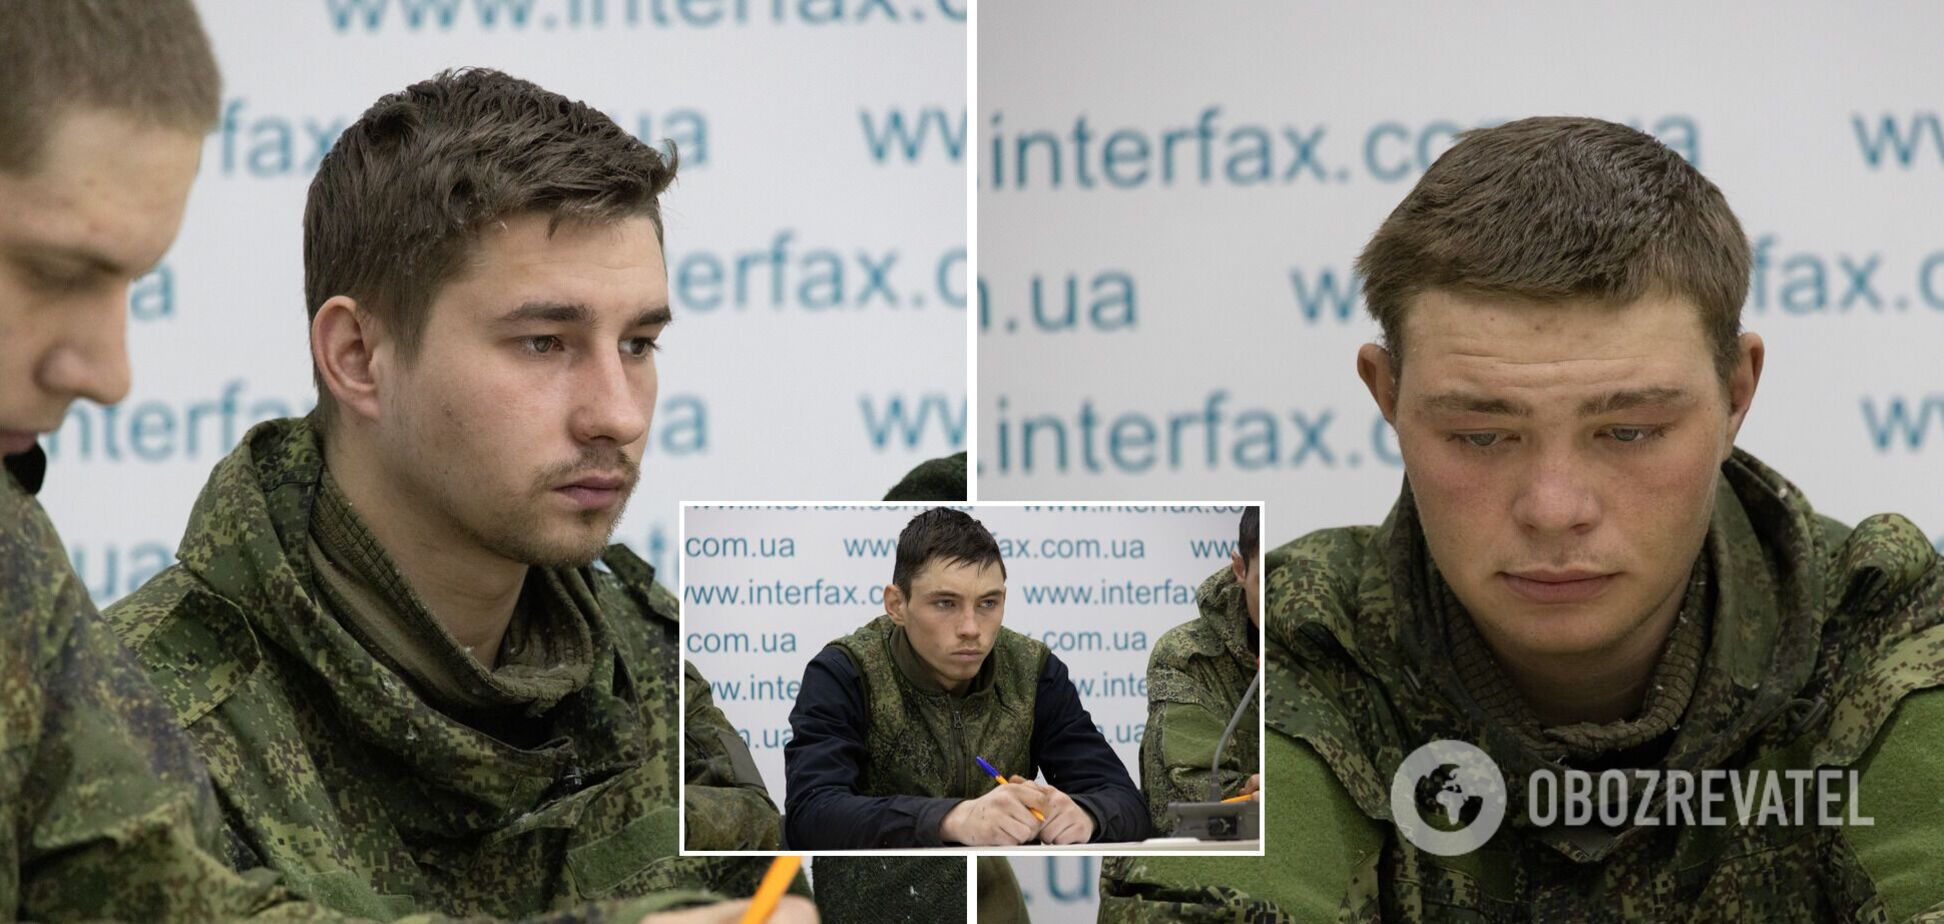 Пленные российские срочники на пресс-конференции в Киеве